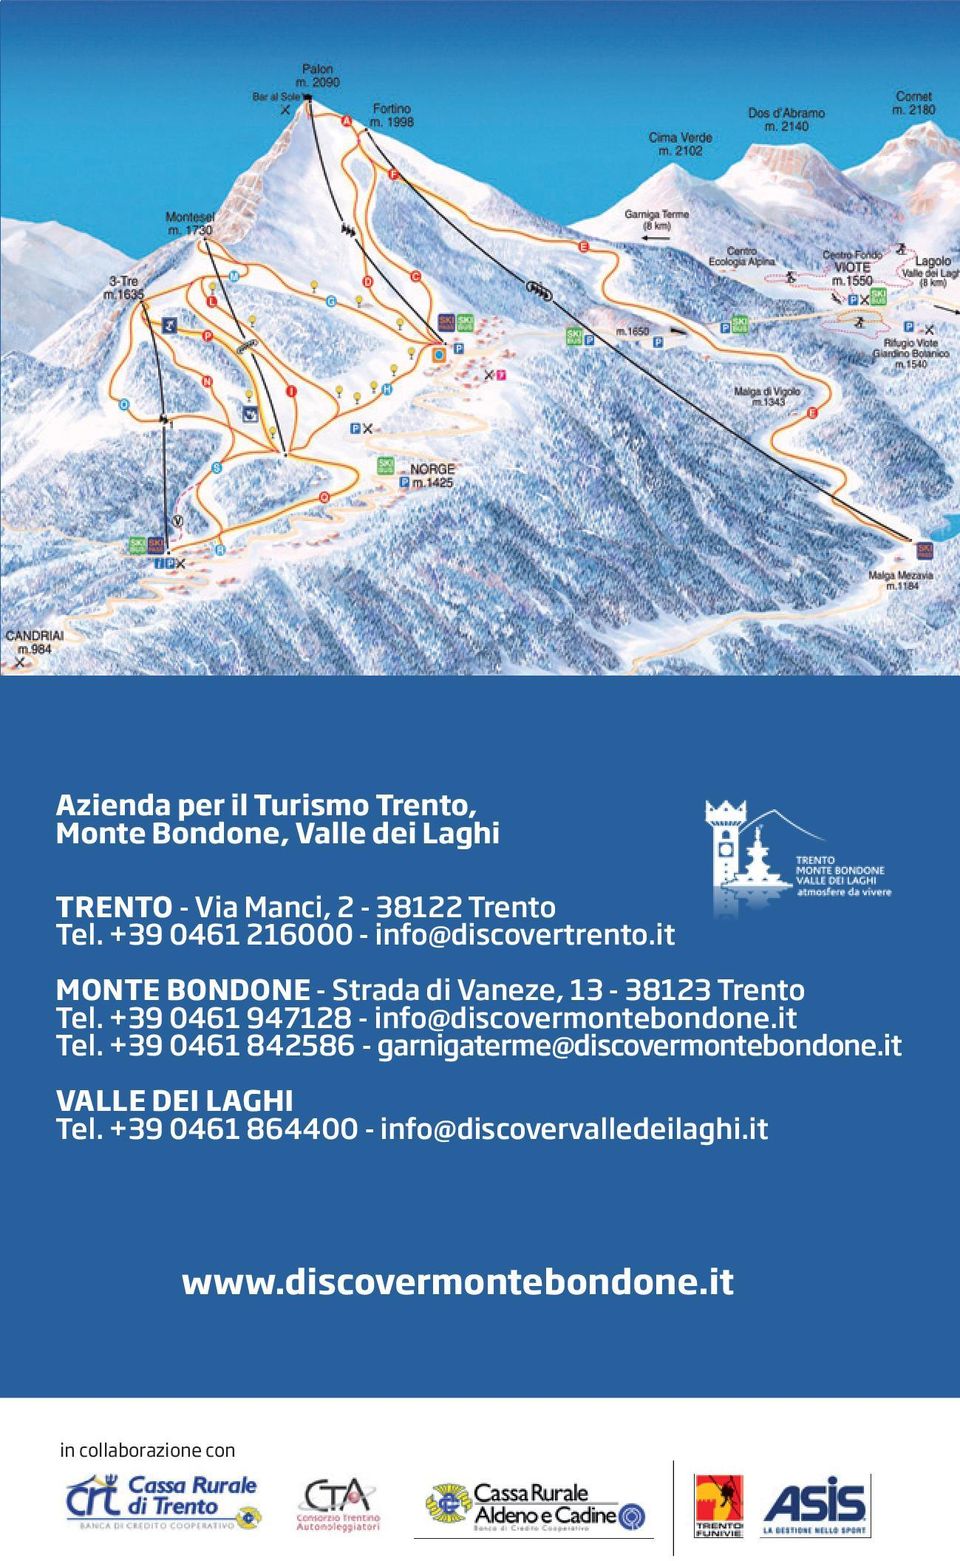 +39 0461 947128 - info@discovermontebondone.it Tel. +39 0461 842586 - garnigaterme@discovermontebondone.it valle dei Laghi Tel.